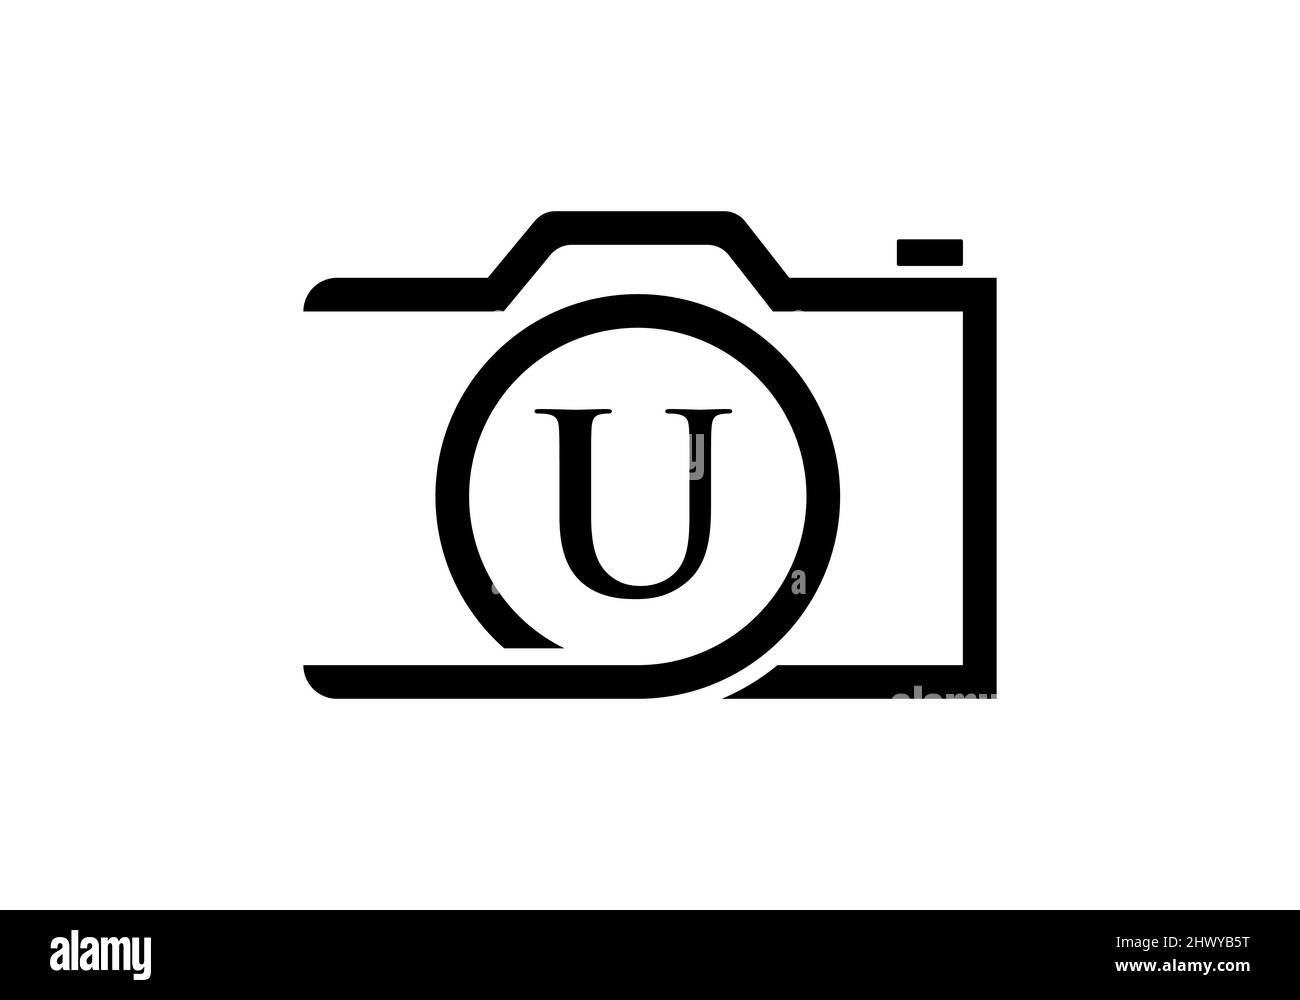 Logo de photographie Design sur lettre U. lettre U Photographie logo Design. Logo de l'appareil photo inspiration de la conception, modèle de photo Illustration de Vecteur